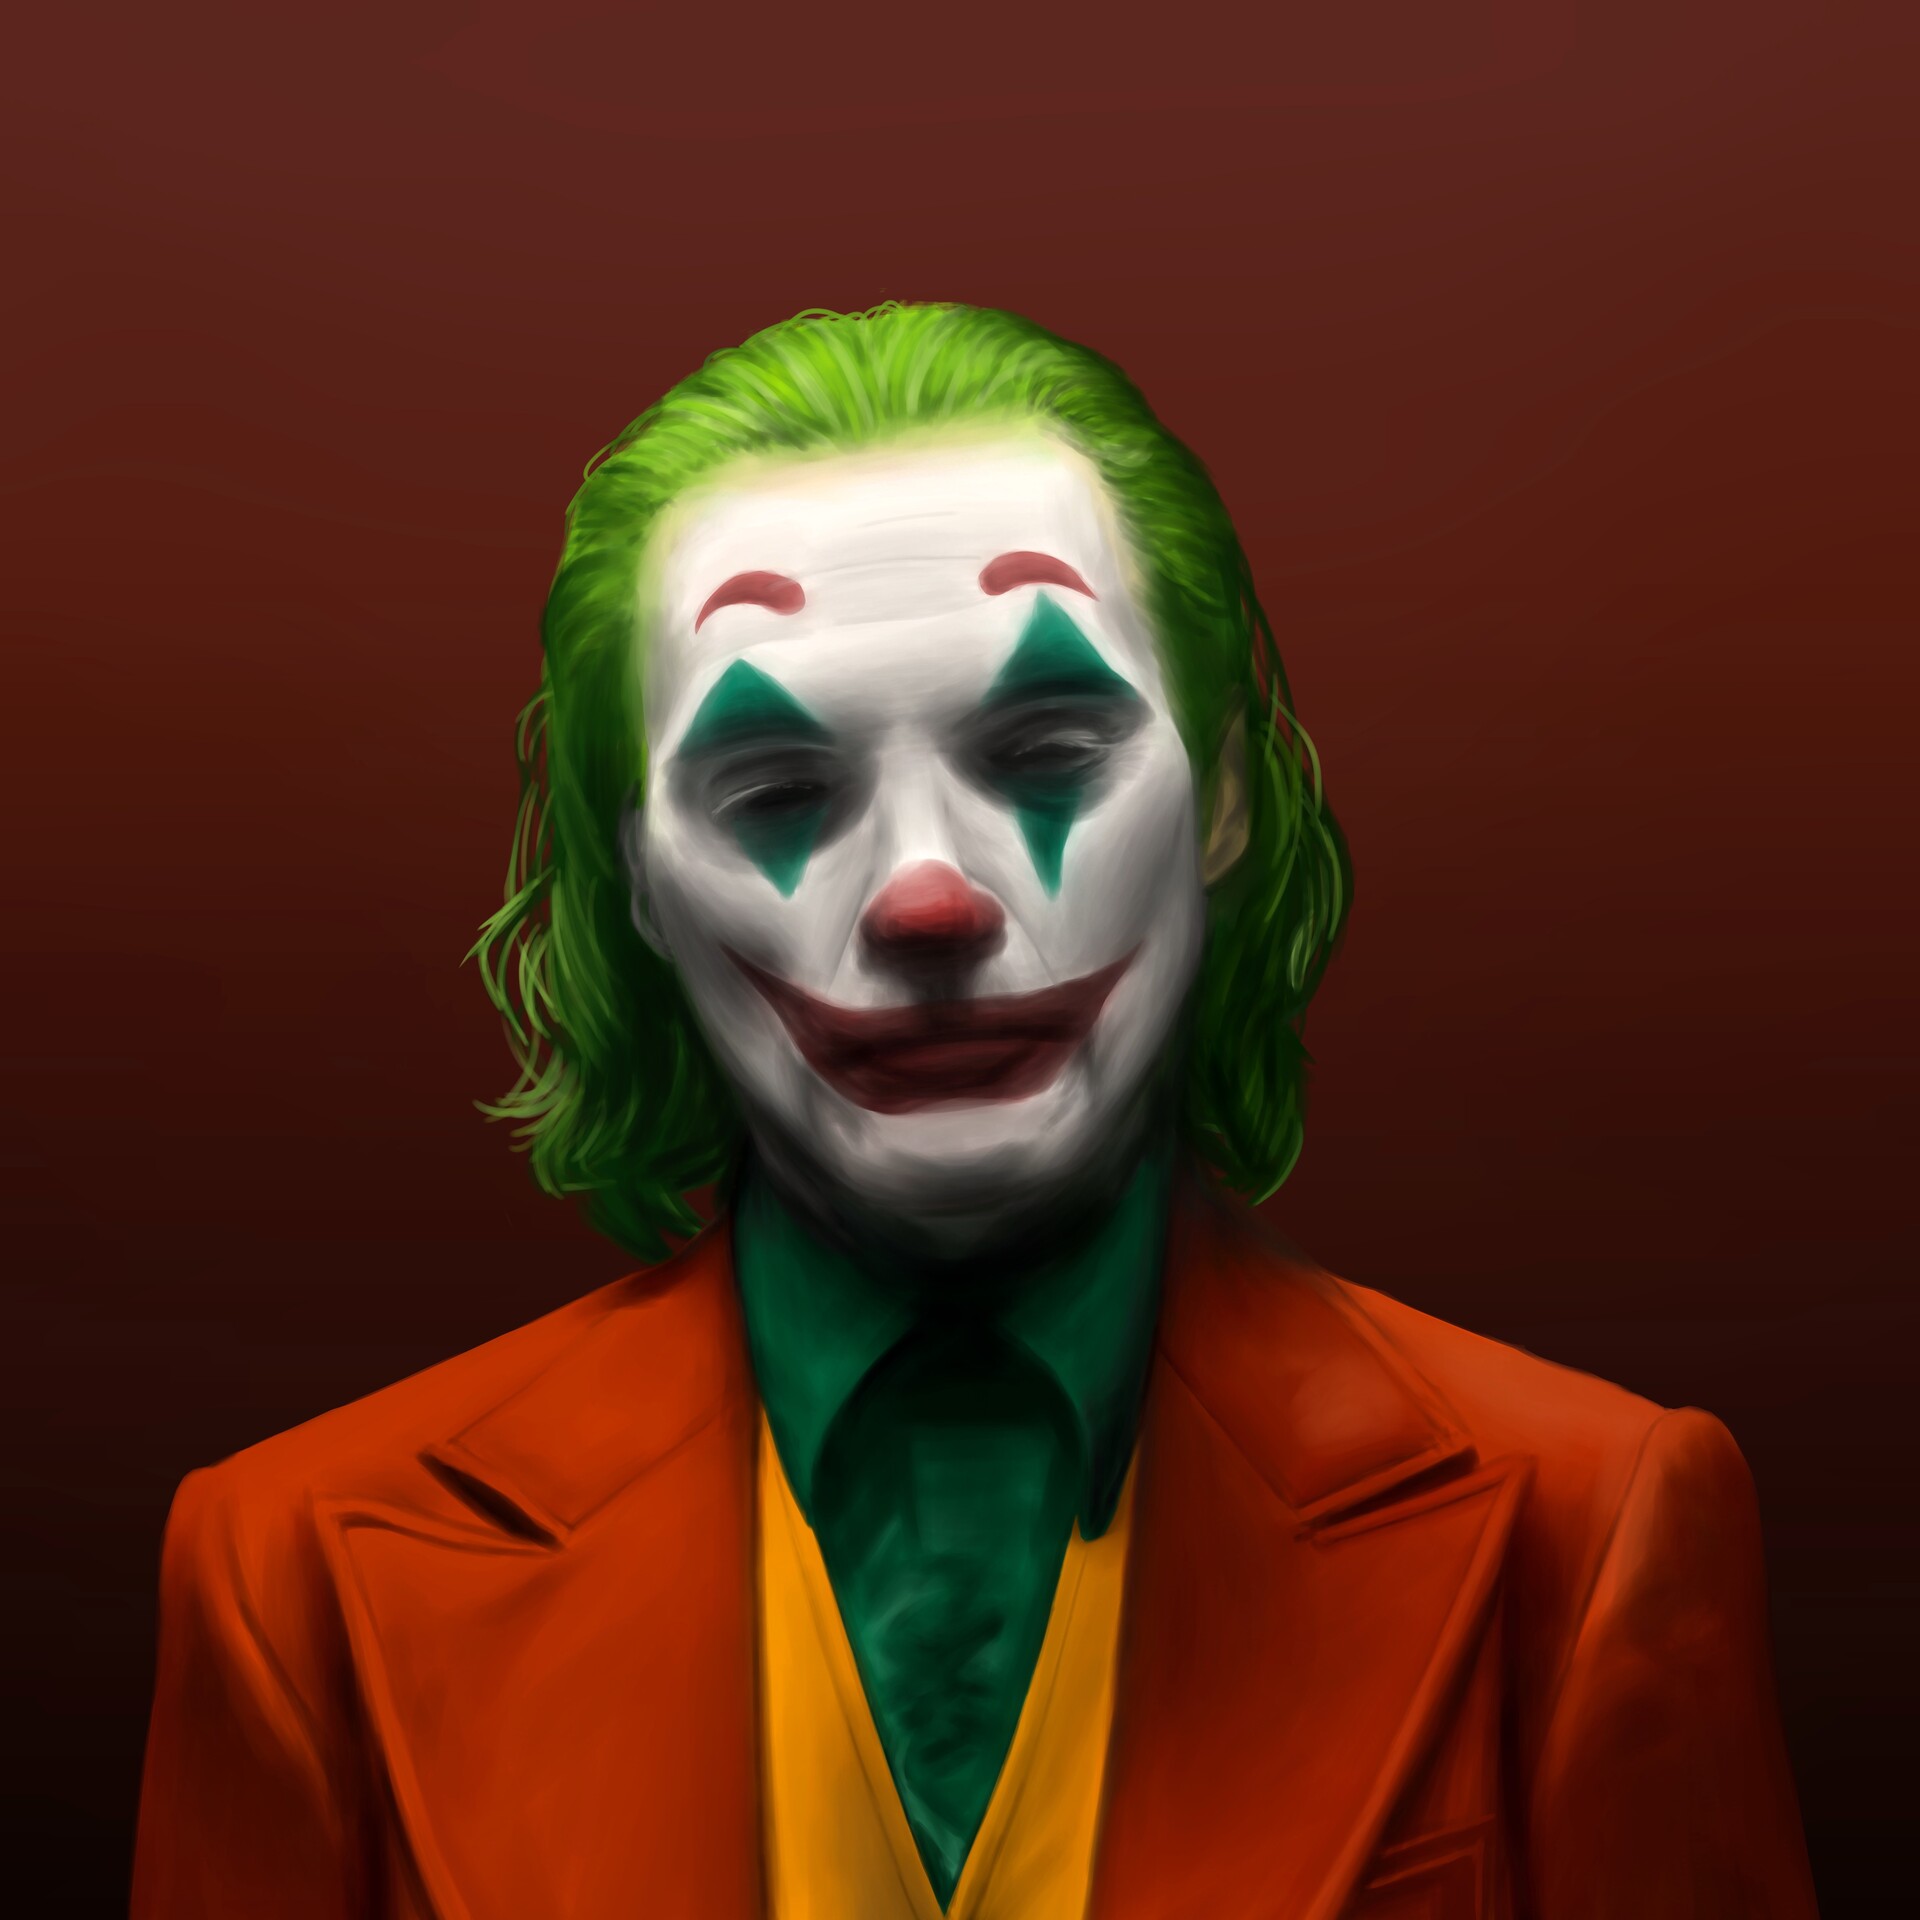 ArtStation - Joker by Joaquin Phoenix